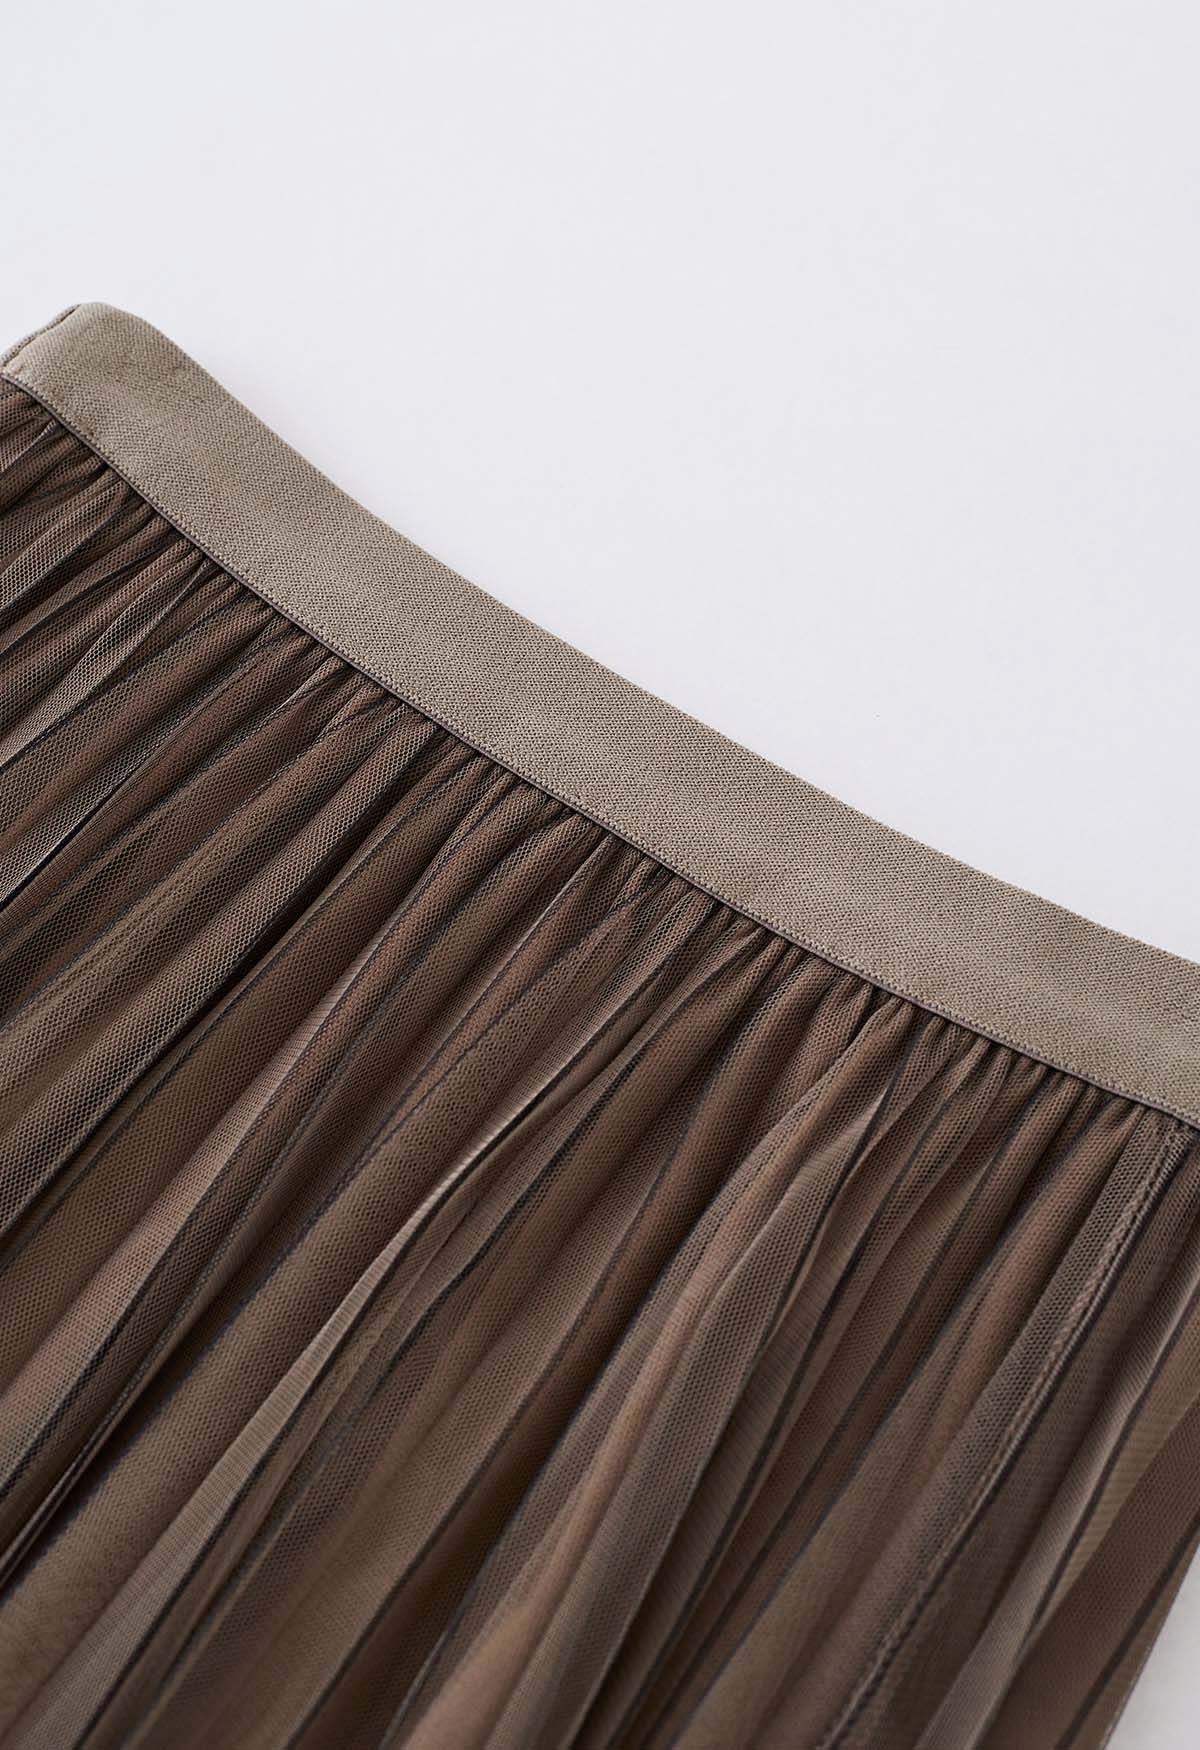 Falda midi de tul de malla plisada con líneas en contraste en marrón